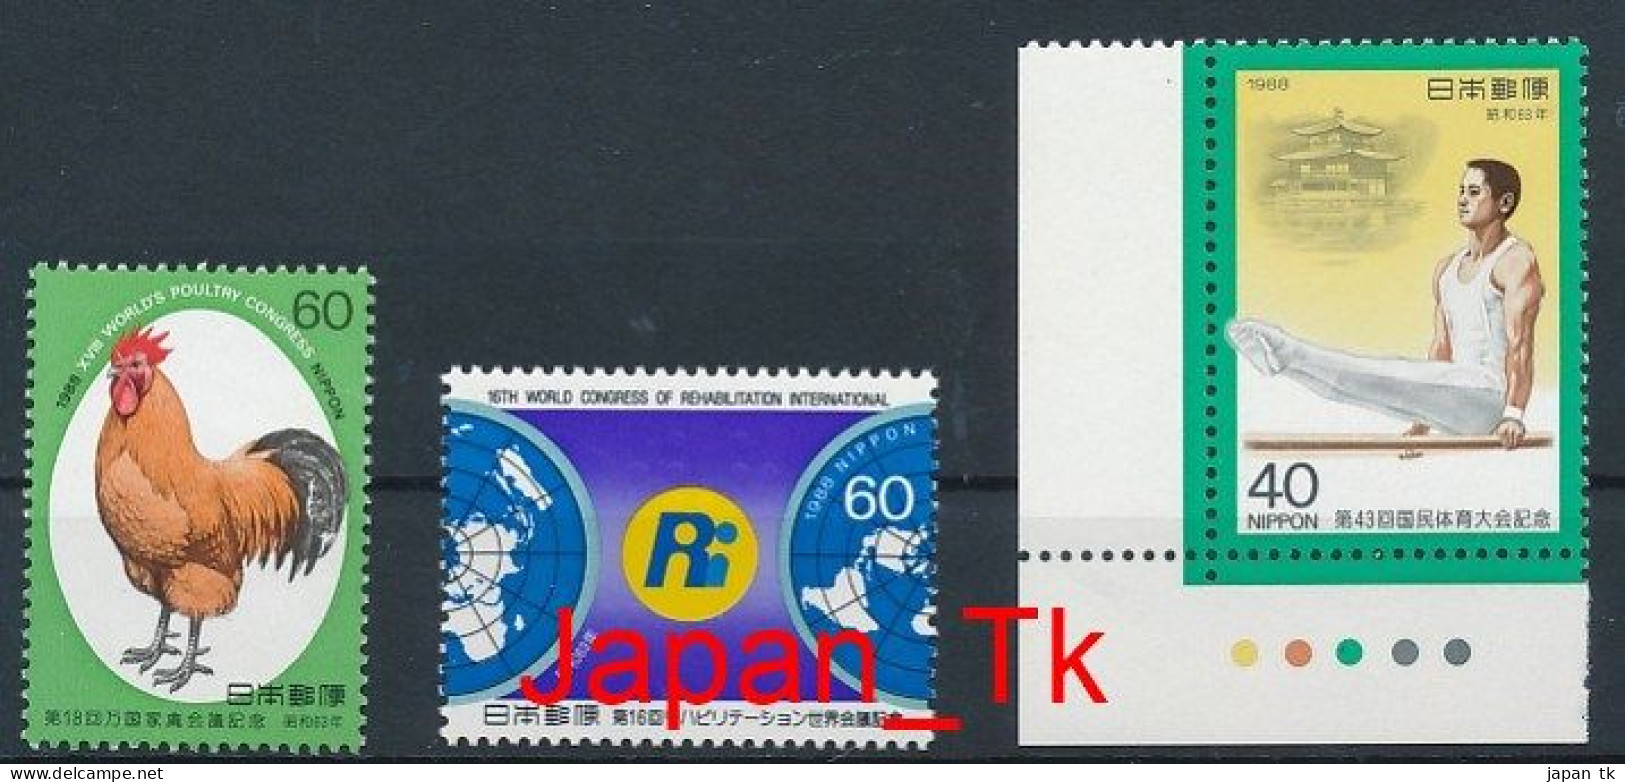 JAPAN Mi. Nr. 1807, 1808, 1813 Siehe Scan - MNH - Unused Stamps